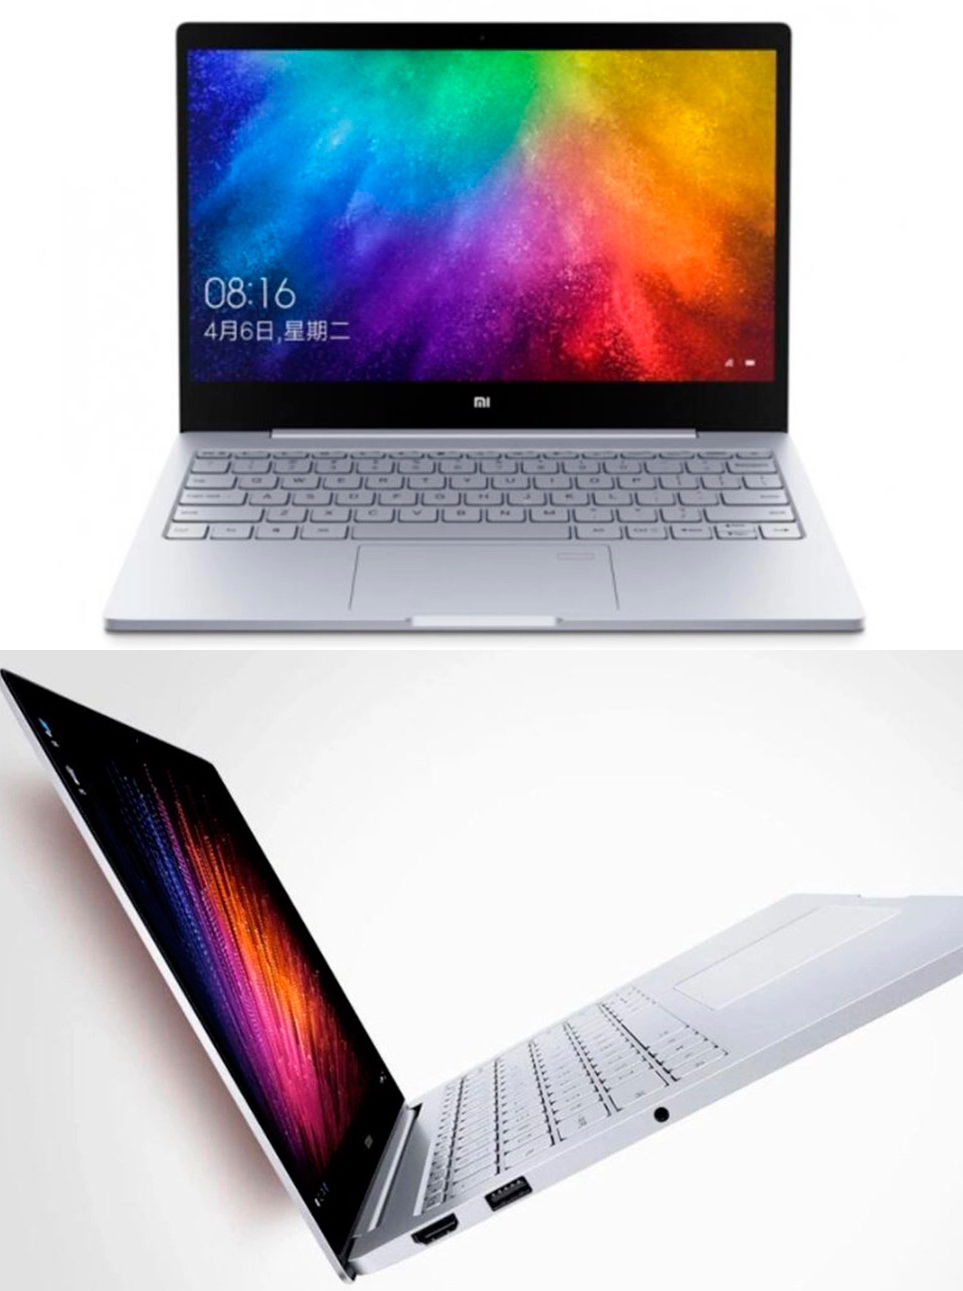 Обзор ноутбука Xiaomi Mi Notebook Air 13.3 2018: характеристики, функции, отзывы